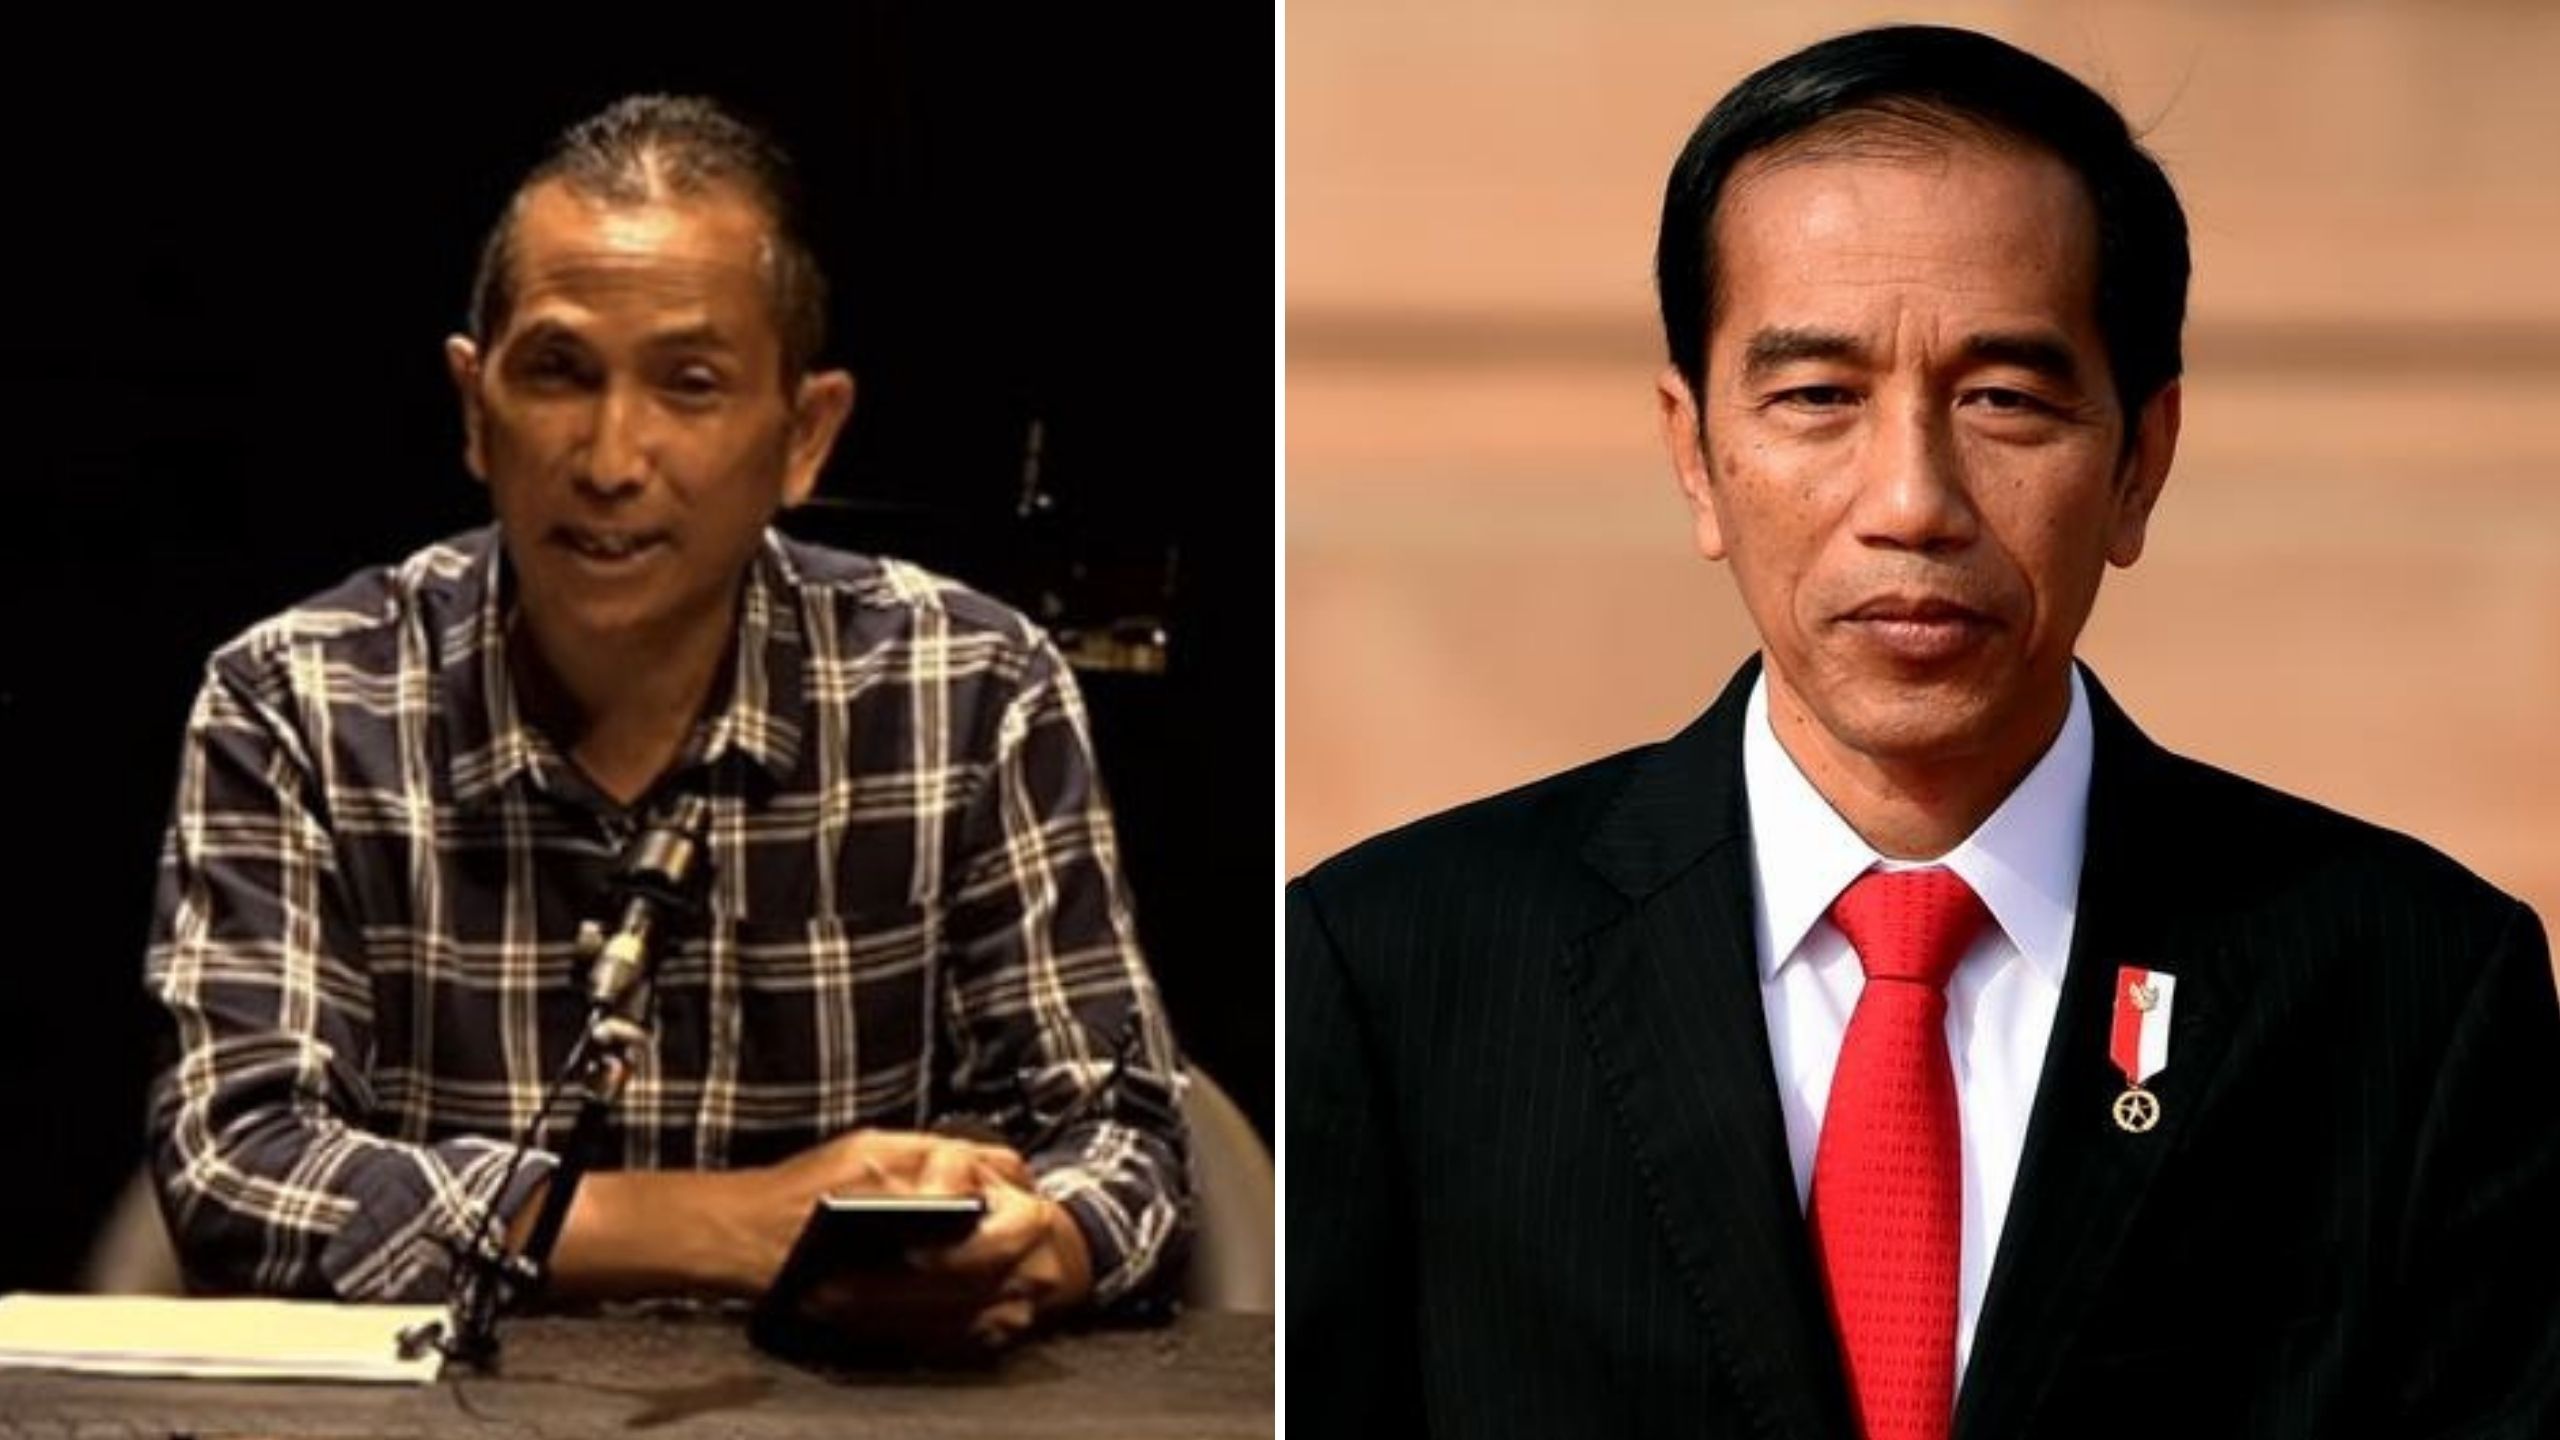 Heran Jokowi 'Tumbalkan' Menteri Soal Kisruh Harga Migor & Pertamax, Hersubeno Arief: Dia Sendiri ke Mana Aja?